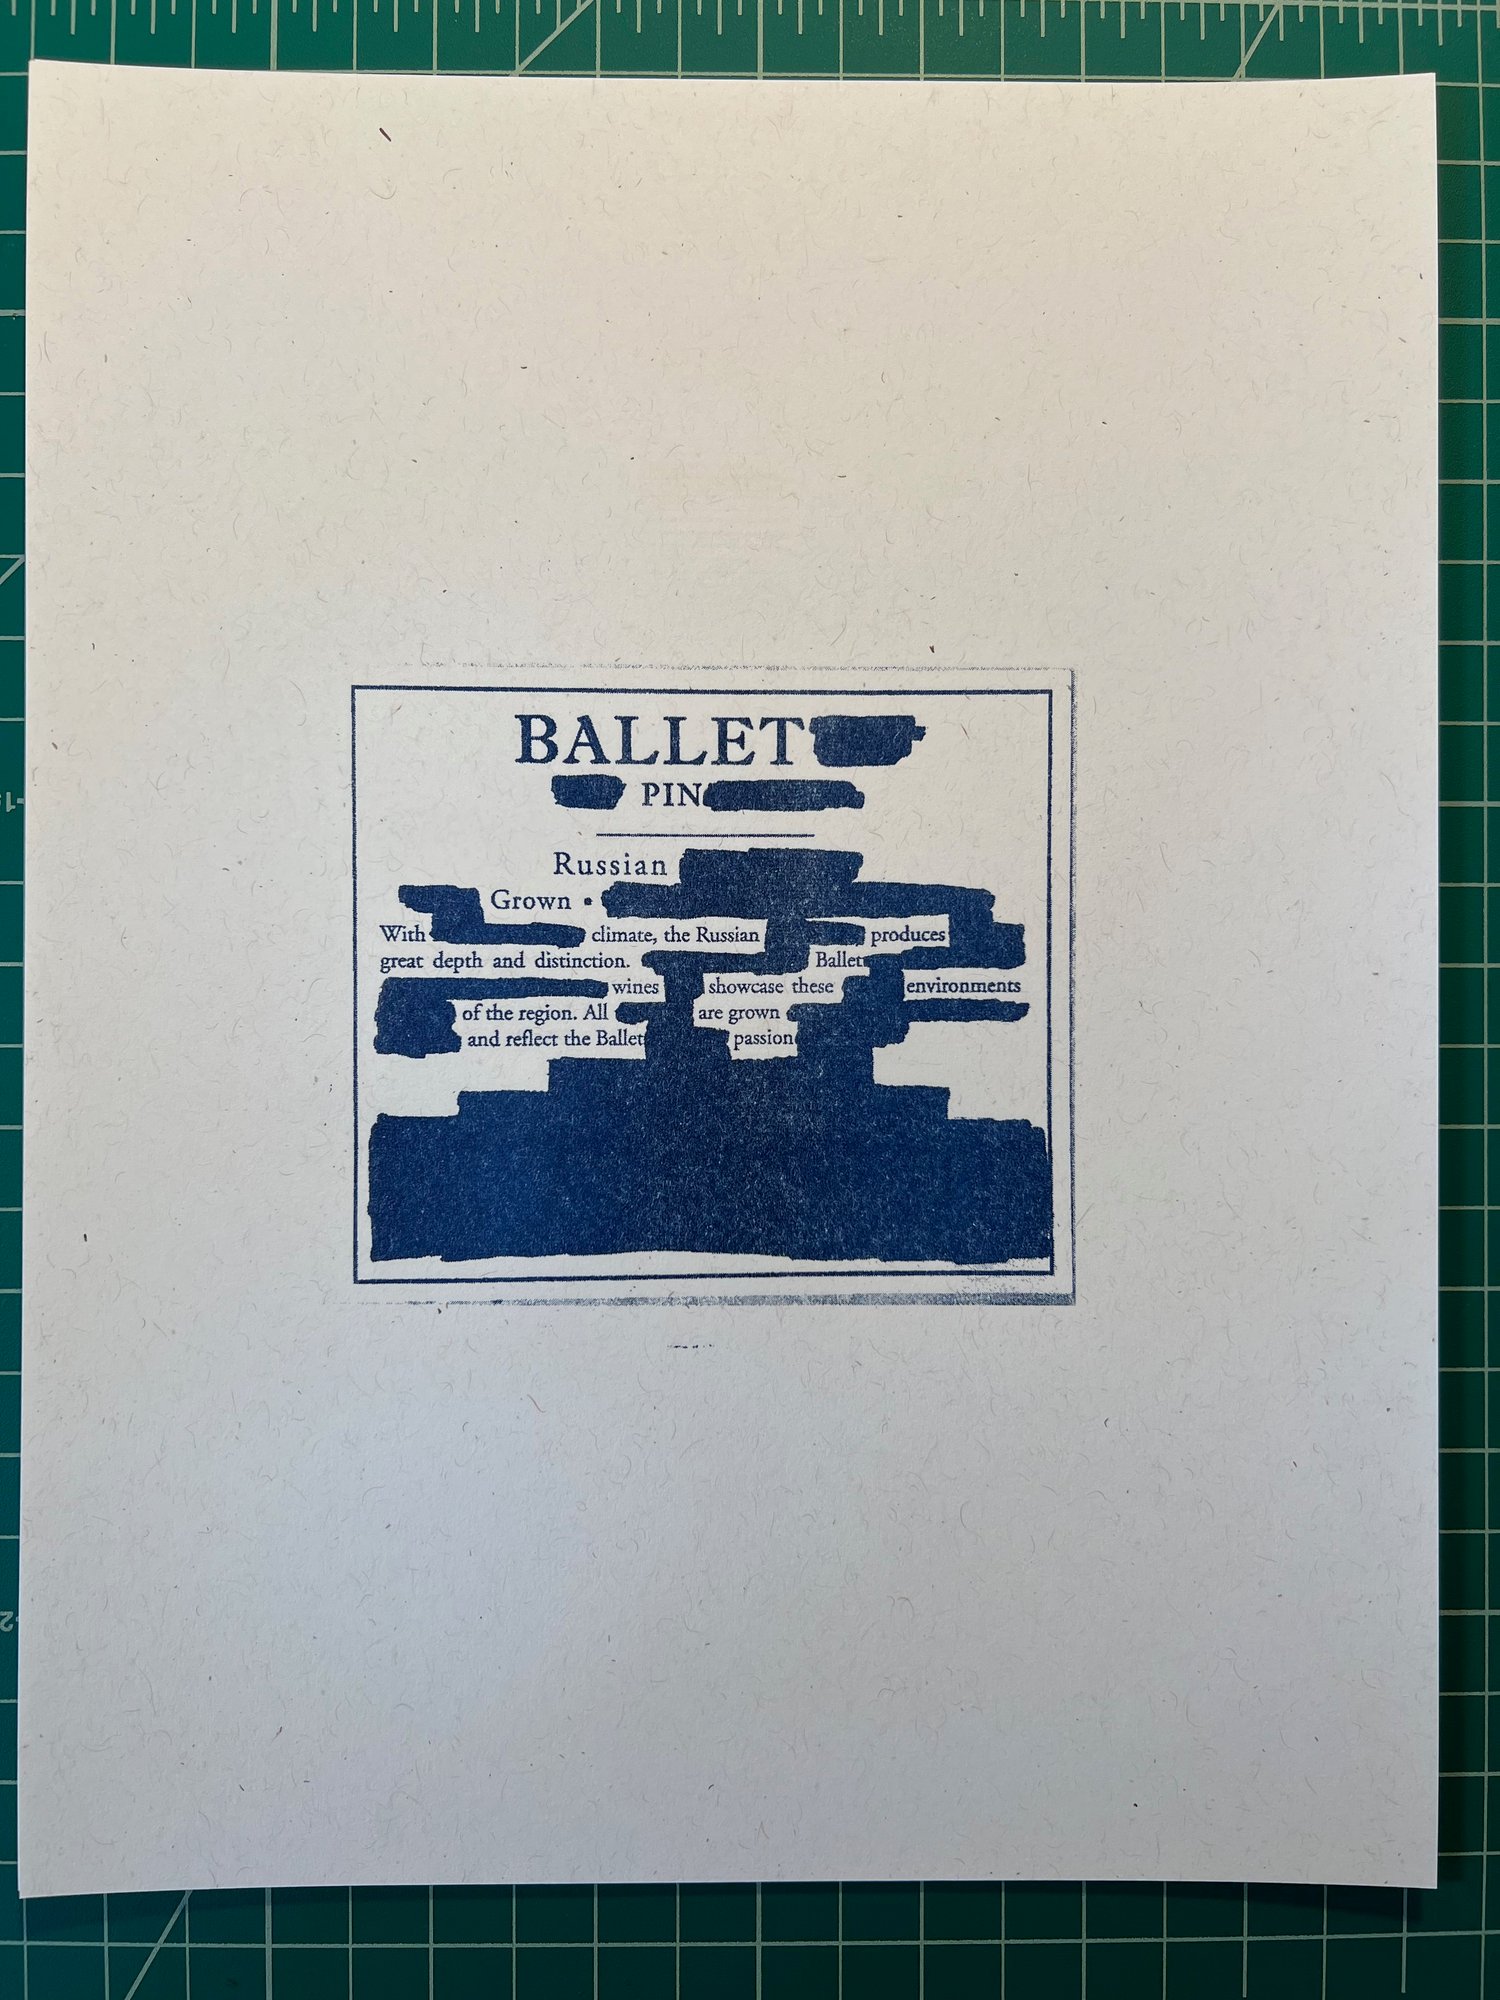 "Ballet" Print